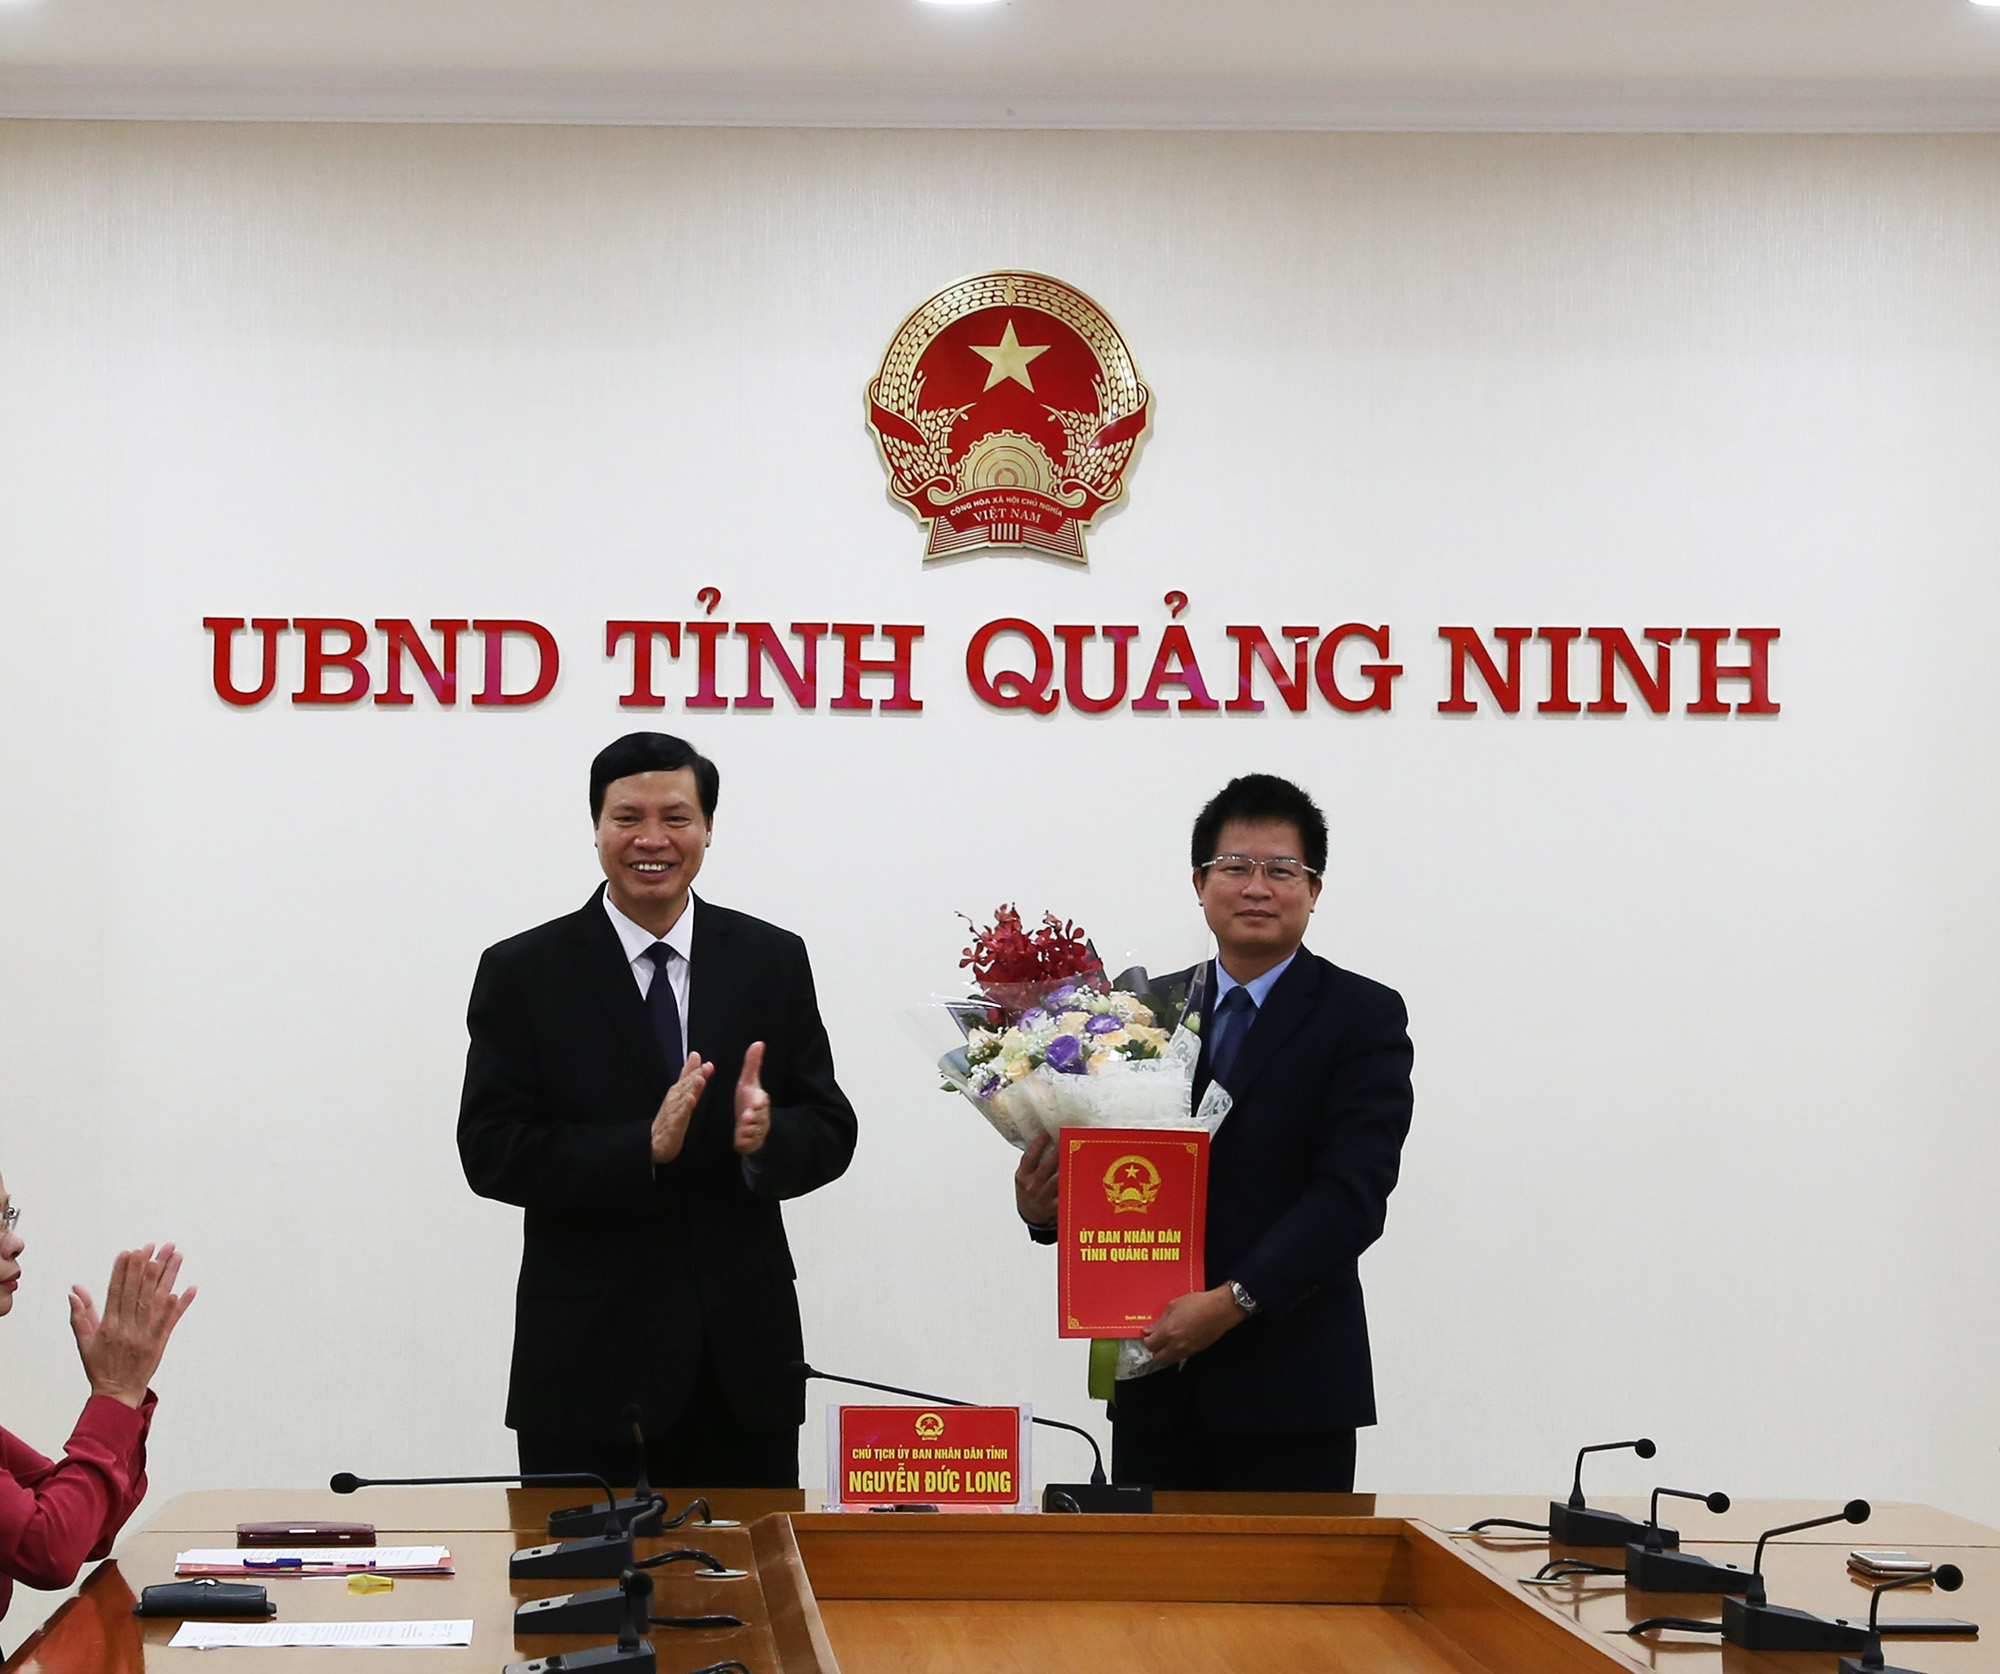 Đồng chí Nguyễn Đức Long, Phó Bí thư Tinh ủy, Chủ tịch UBND tỉnh, trao Quyết định bổ nhiệm Giám đốc Trung Trung tâm Phục vụ hành chính công tỉnh cho đồng chí Đỗ Ngọc Nam.